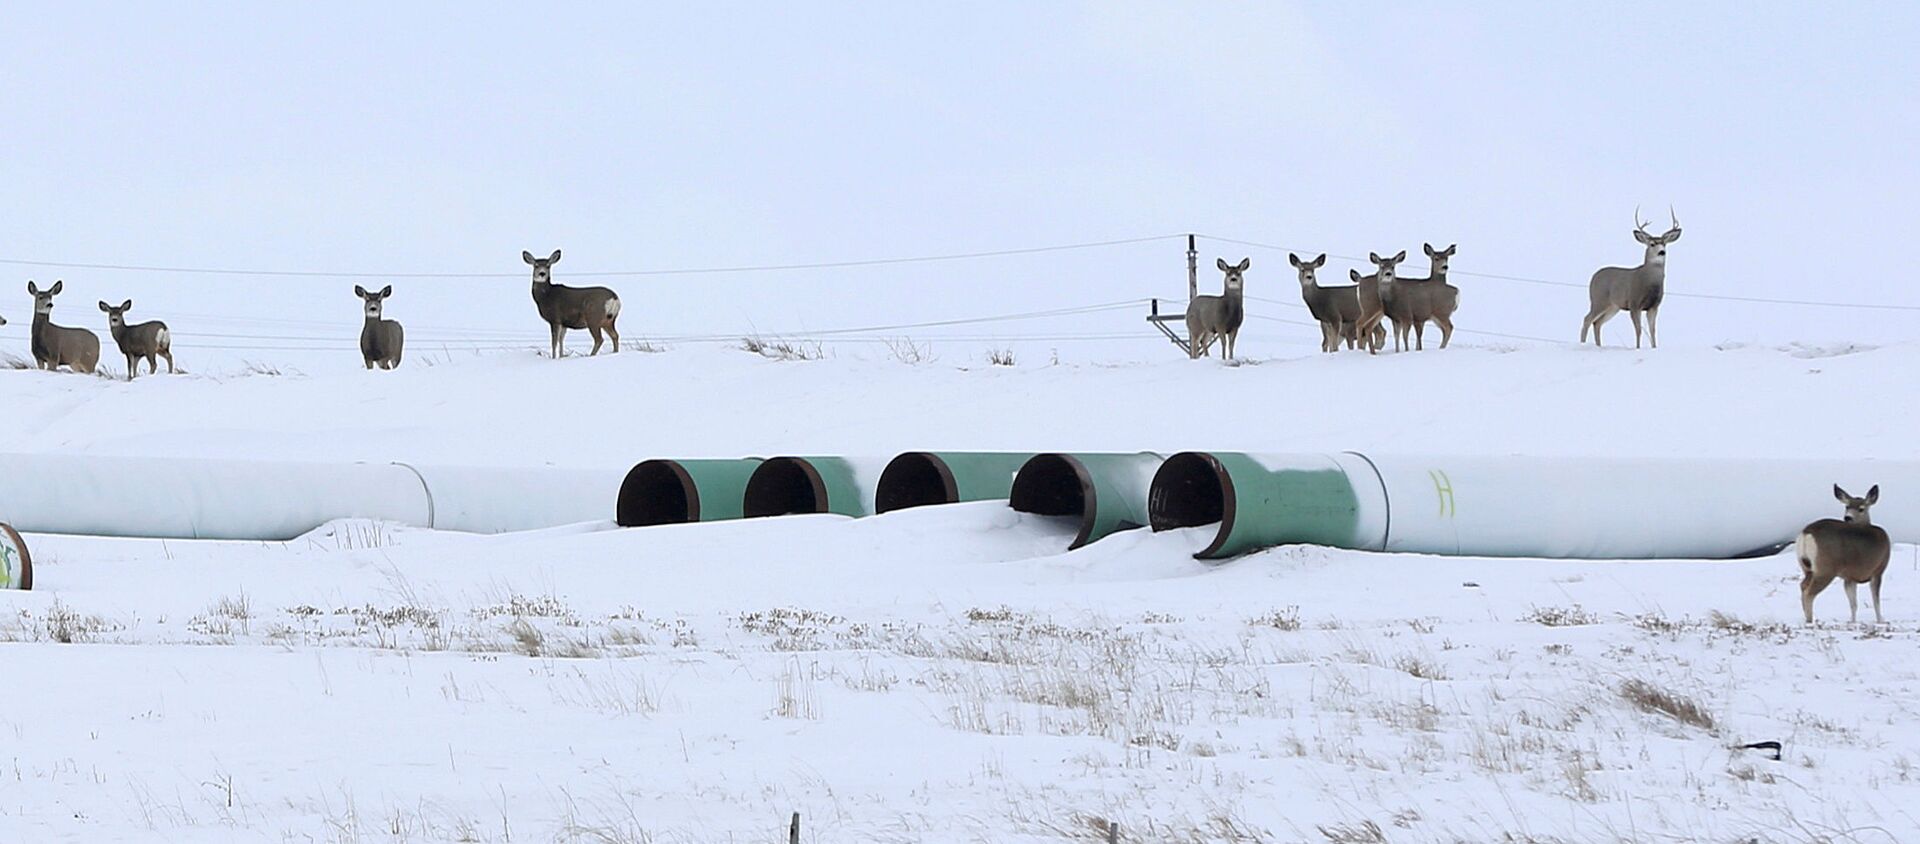 Олени собираются на складе, где хранятся трубы для планируемого нефтепровода Keystone XL в Гаскойне, Северная Дакота, 25 января 2017 года - Sputnik Абхазия, 1920, 26.01.2021